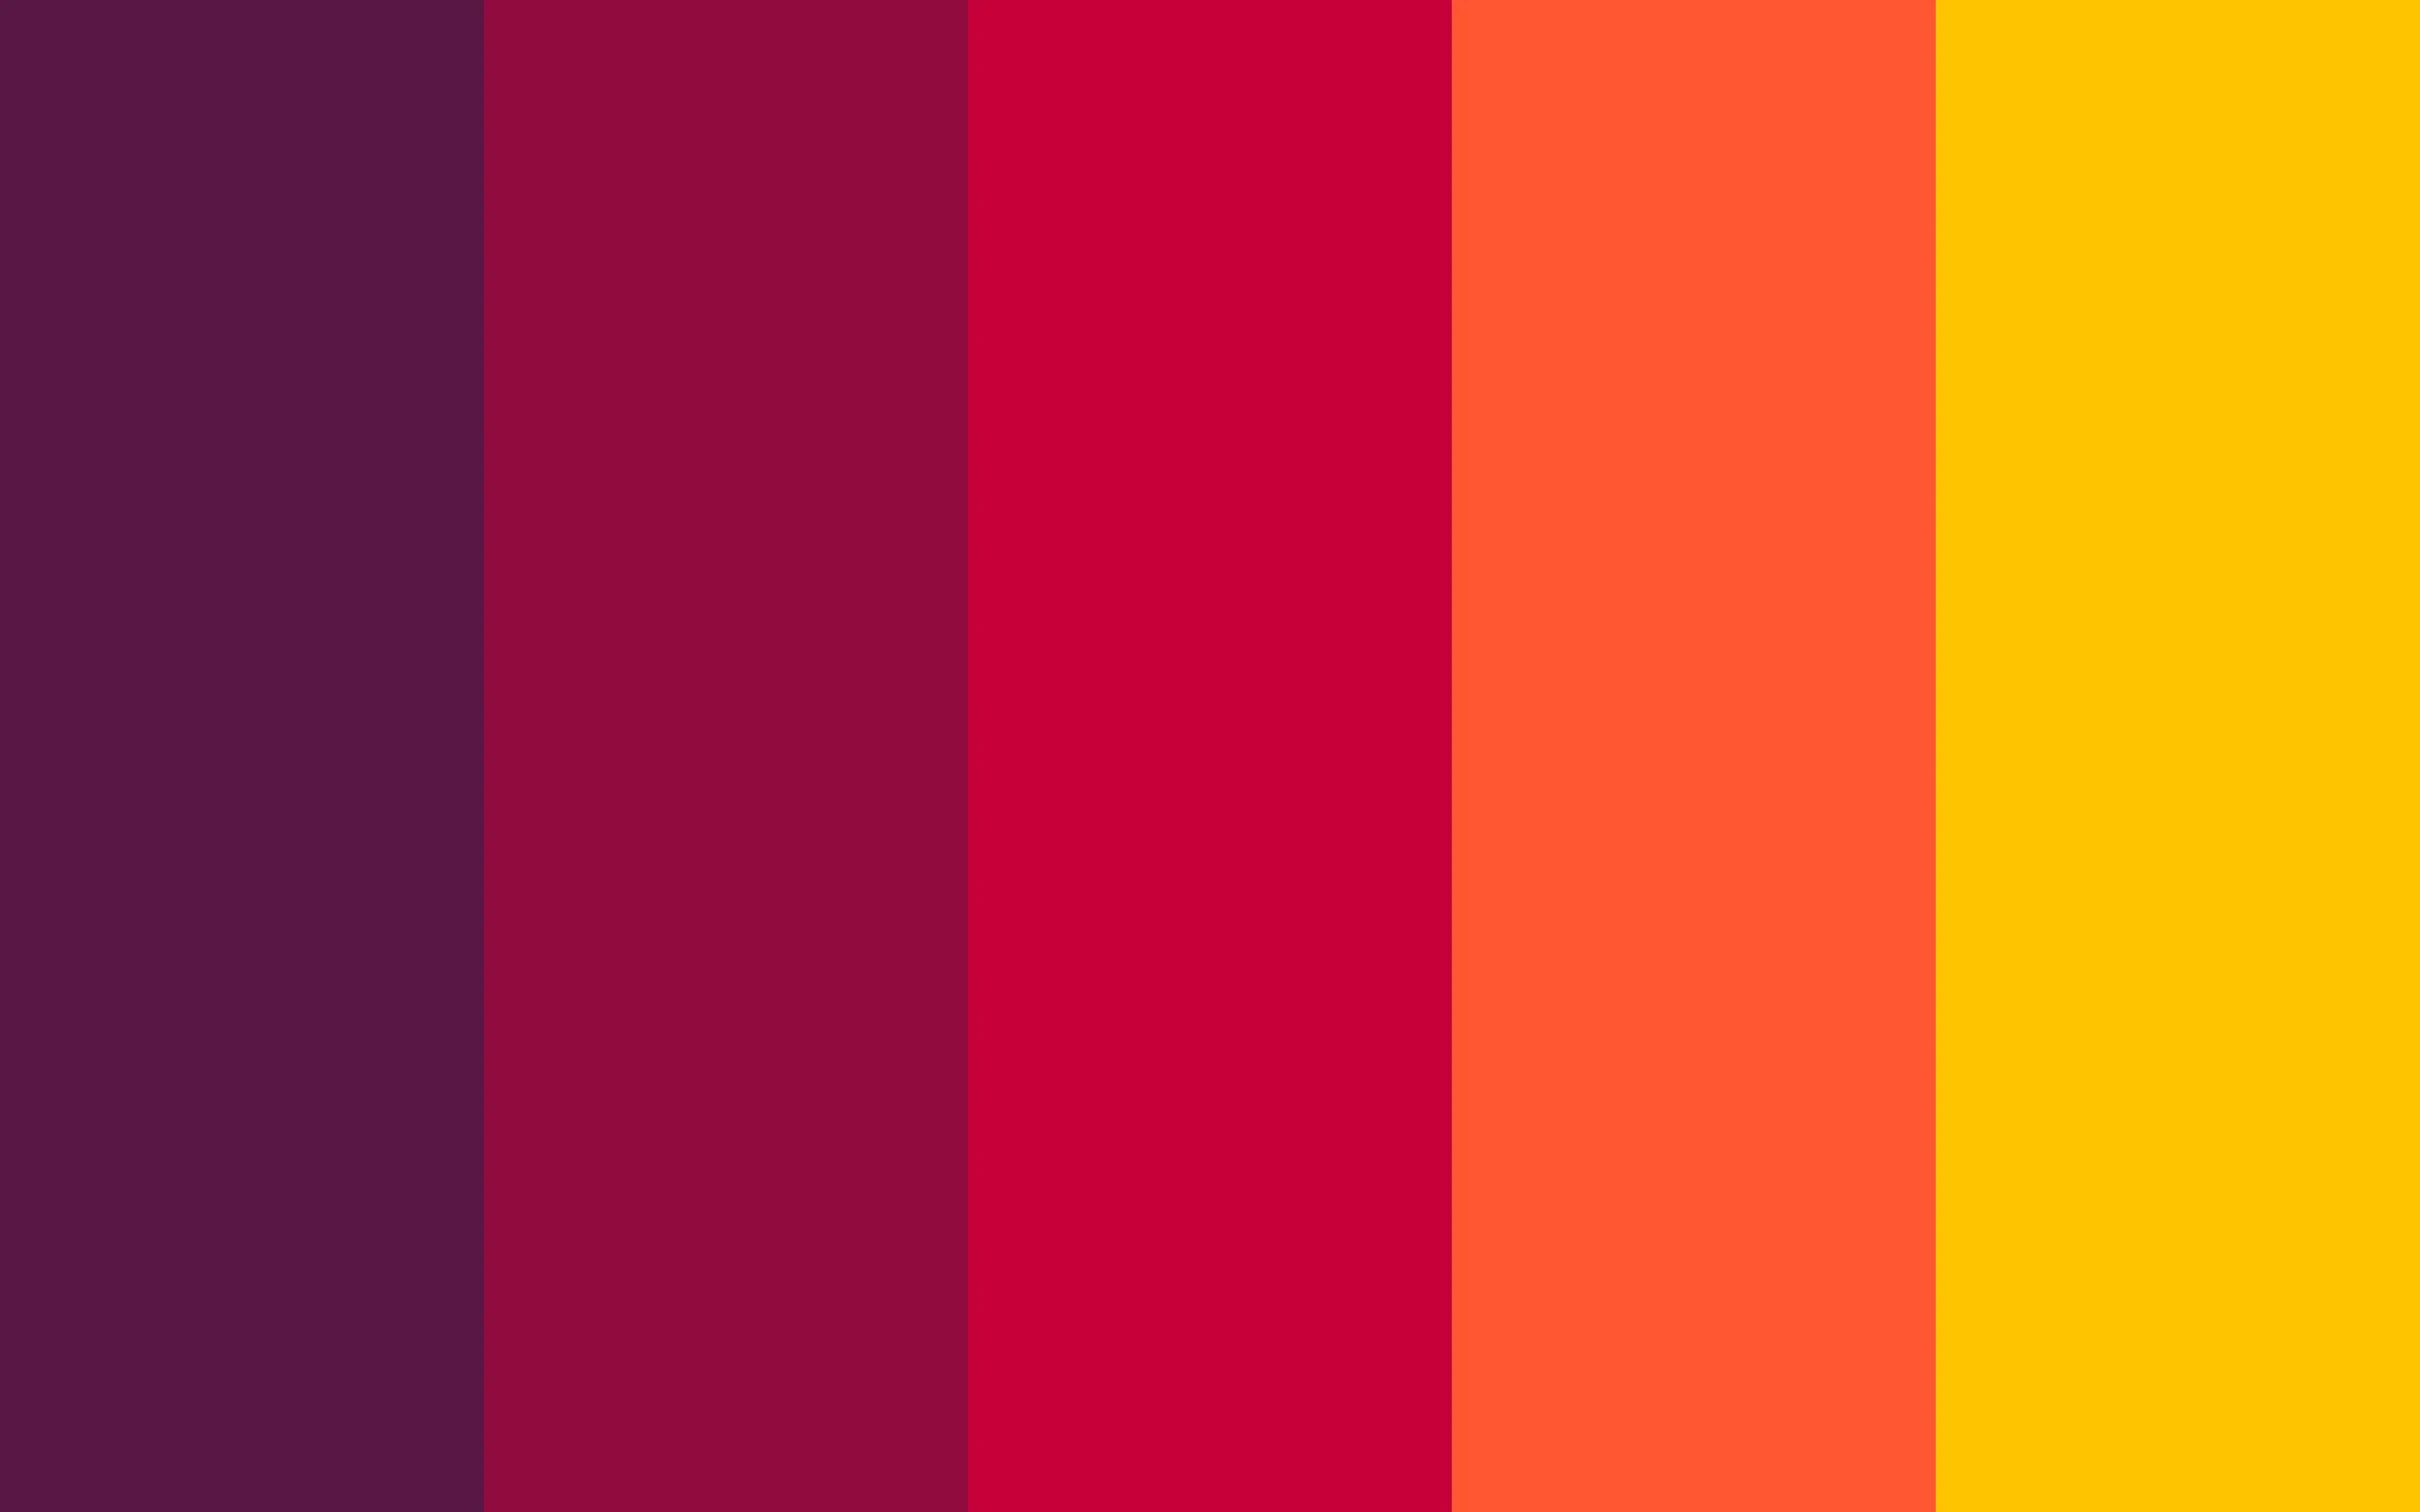 color pallete featuring warm colors